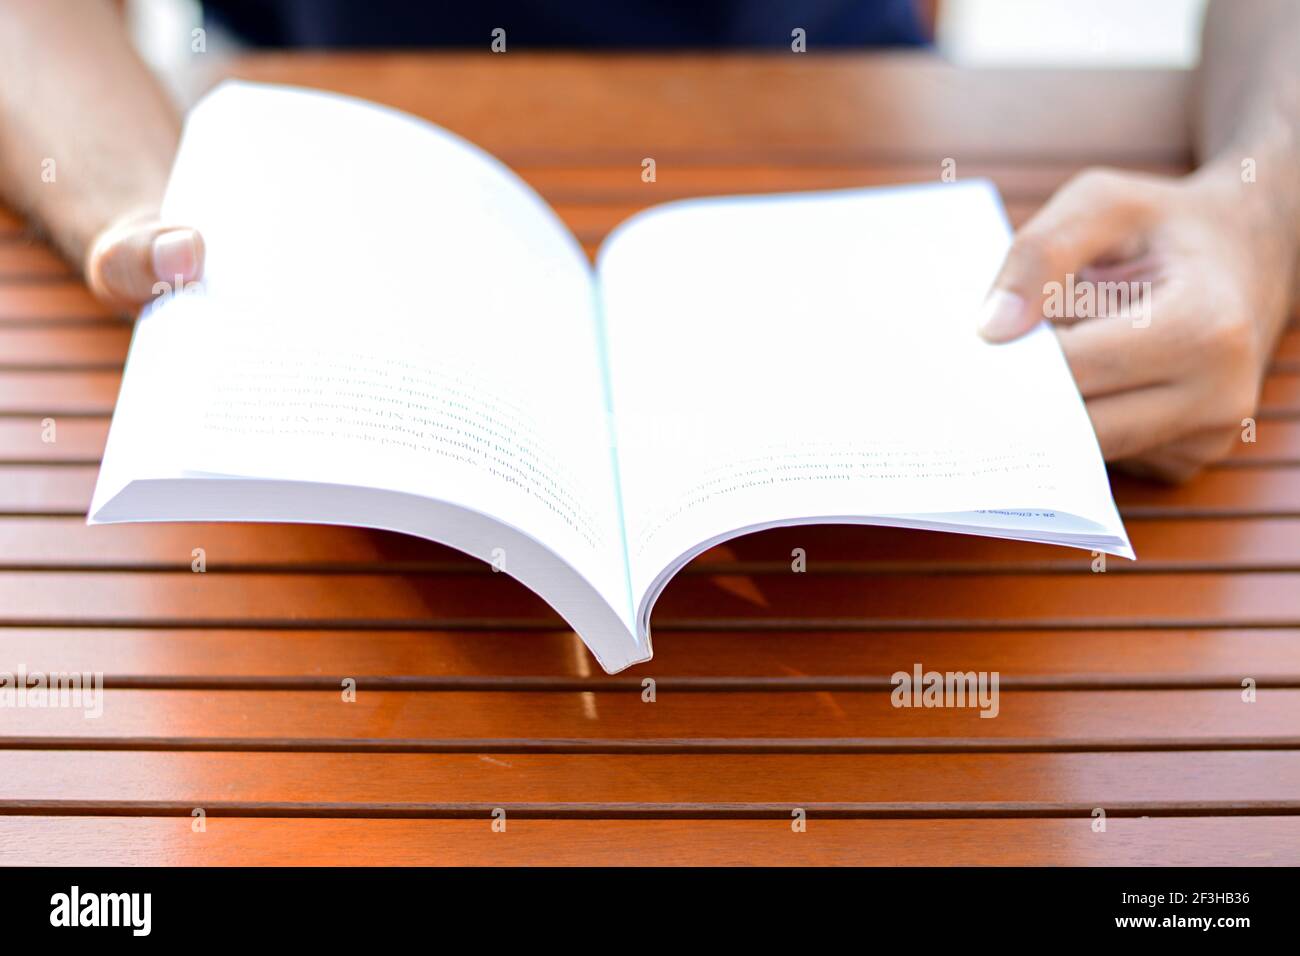 Hände öffnen Buch auf dem Tisch - Lesekonzept Stockfoto